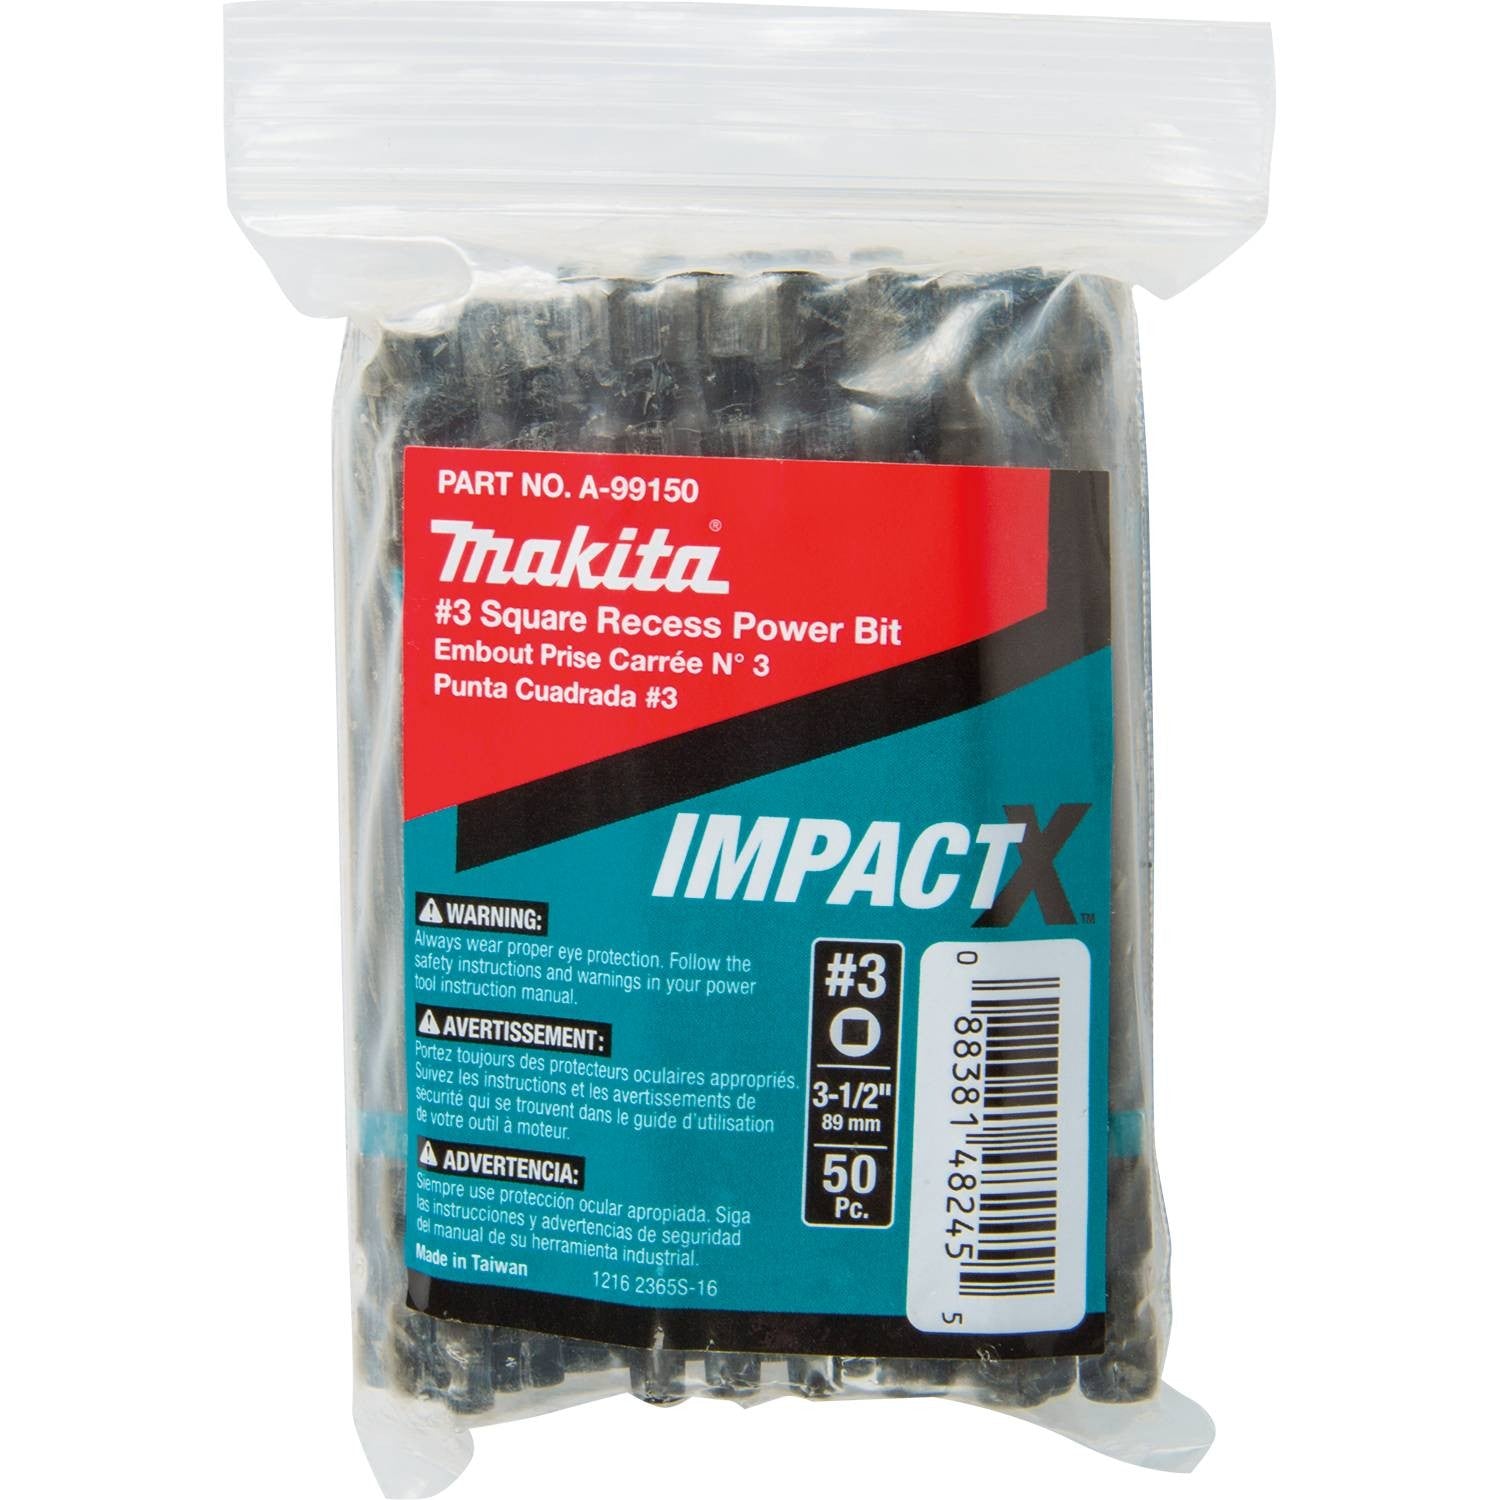 Makita A-99150 ImpactX  #3 Square Recess 3-1/2" Power Bit, 50/pk, Bulk